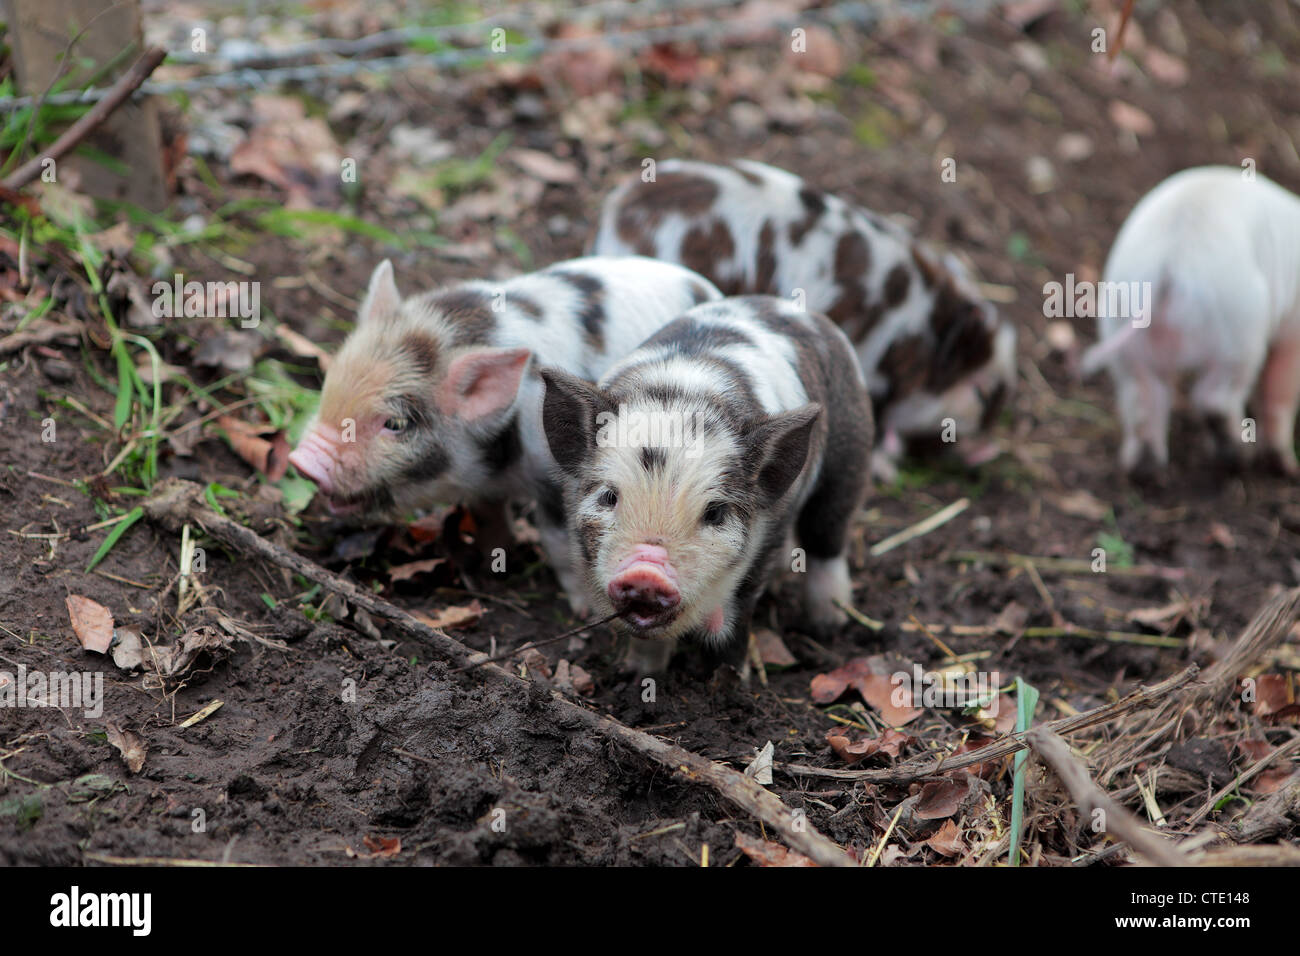 Rare breed Kune Kune piglets Stock Photo